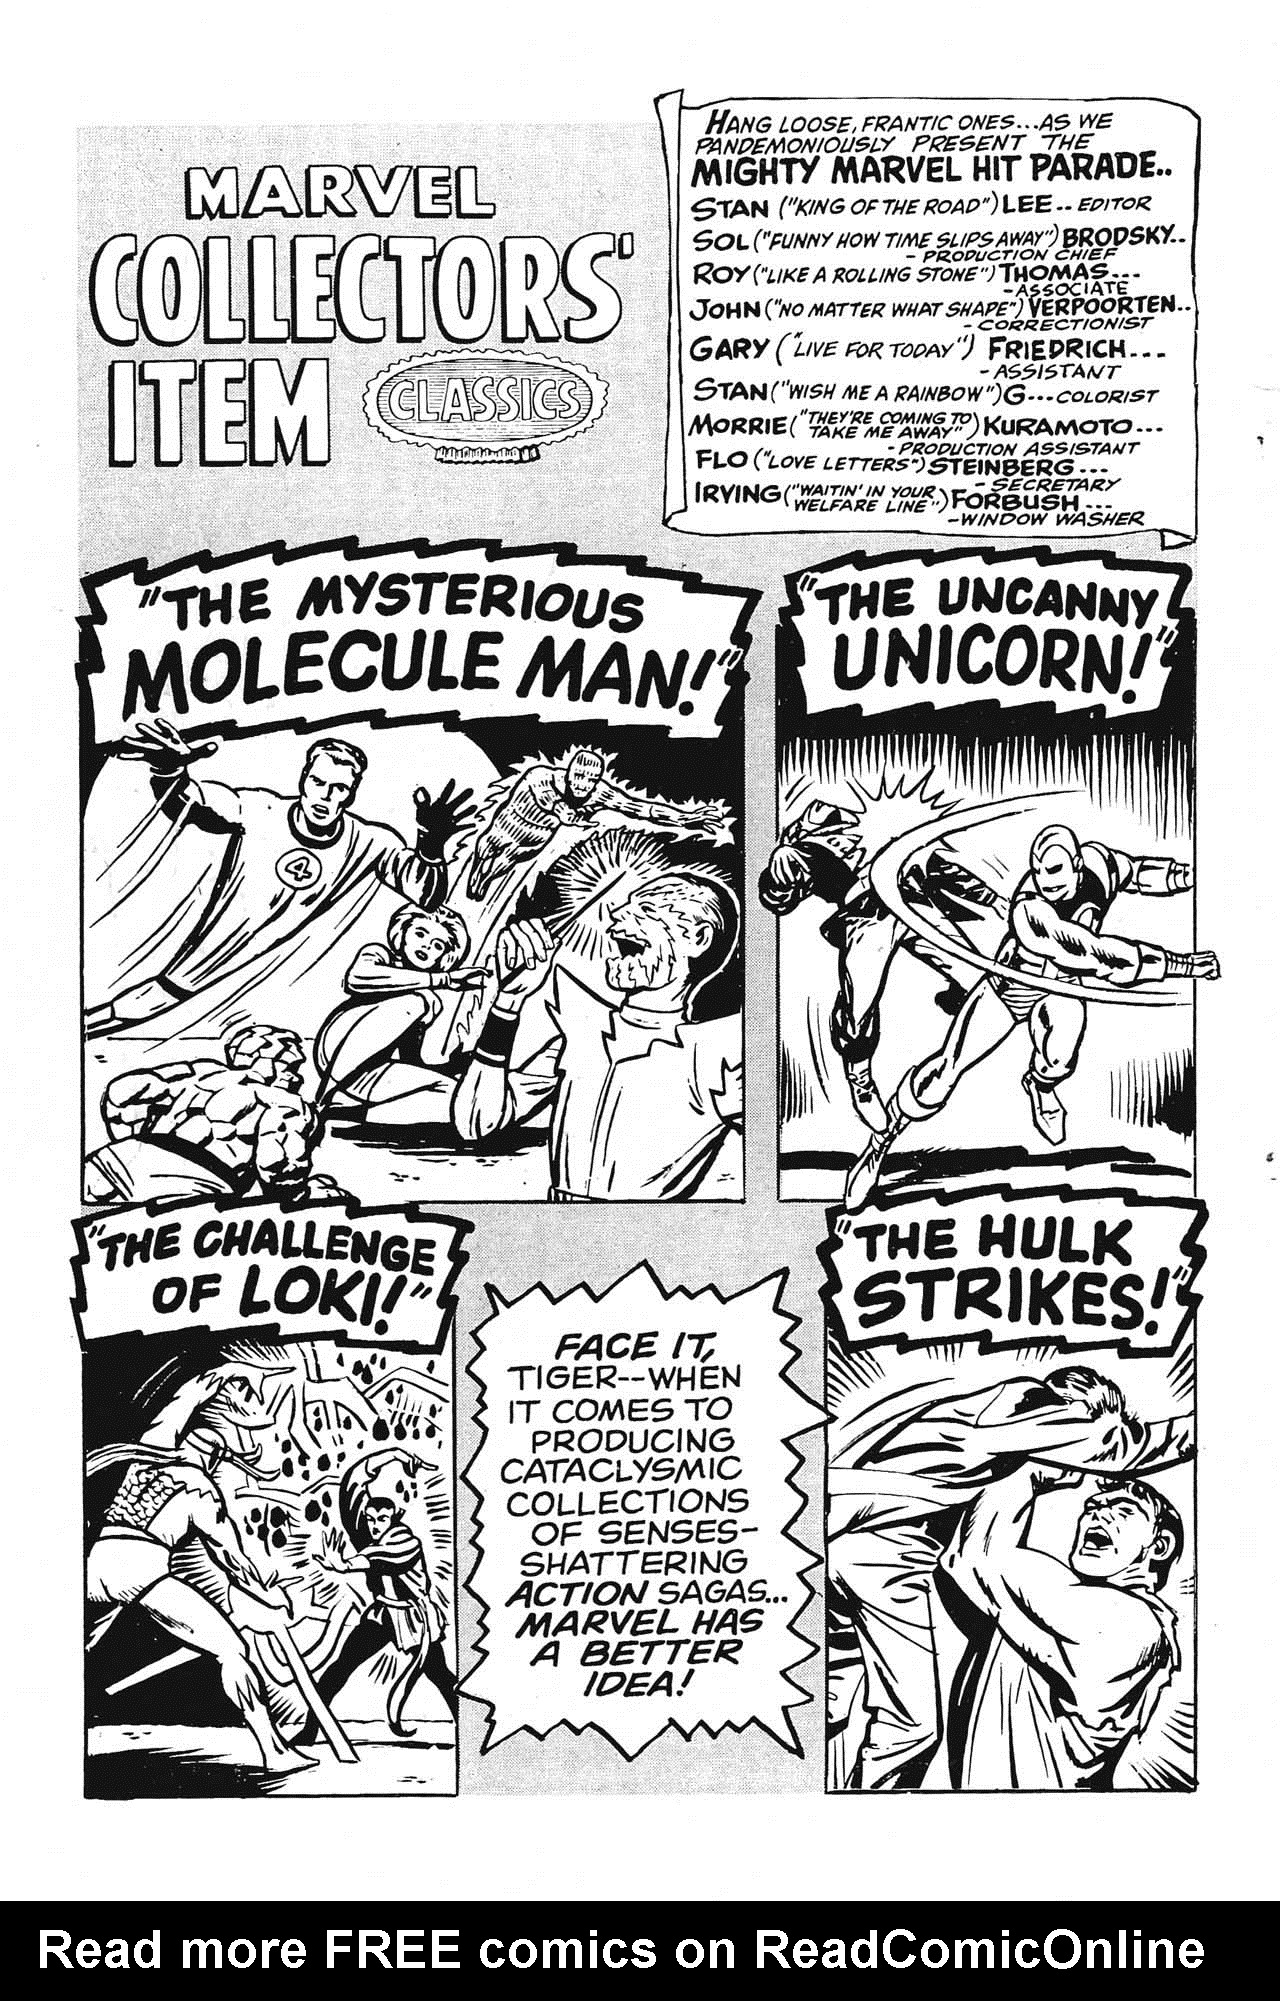 Read online Marvel Collectors' Item Classics comic -  Issue #14 - 2